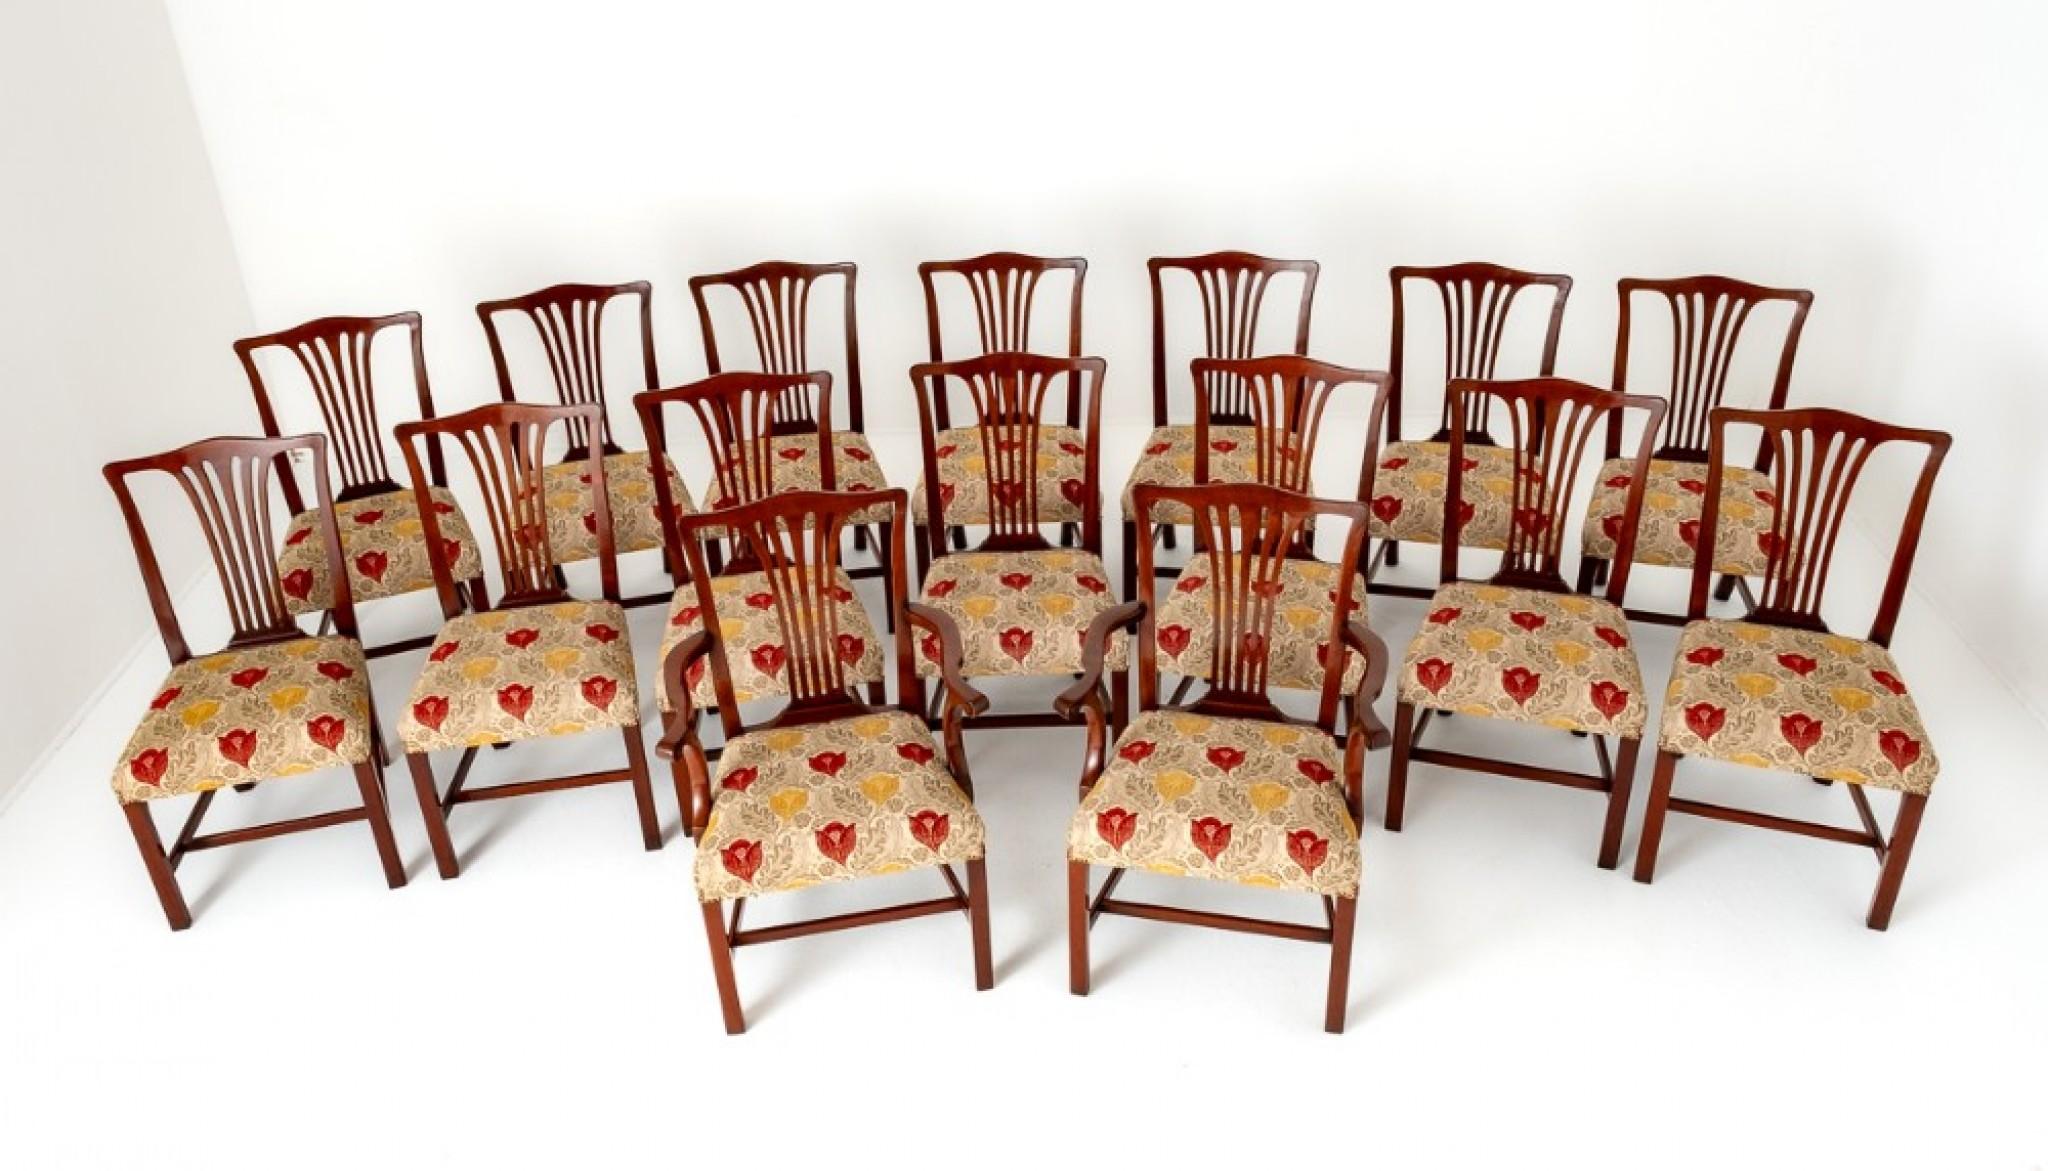 Ensemble de 16 (14 + 2) chaises de salle à manger en acajou de style Chippendale.
Ces chaises reposent sur des pieds carrés avec un cadre en 